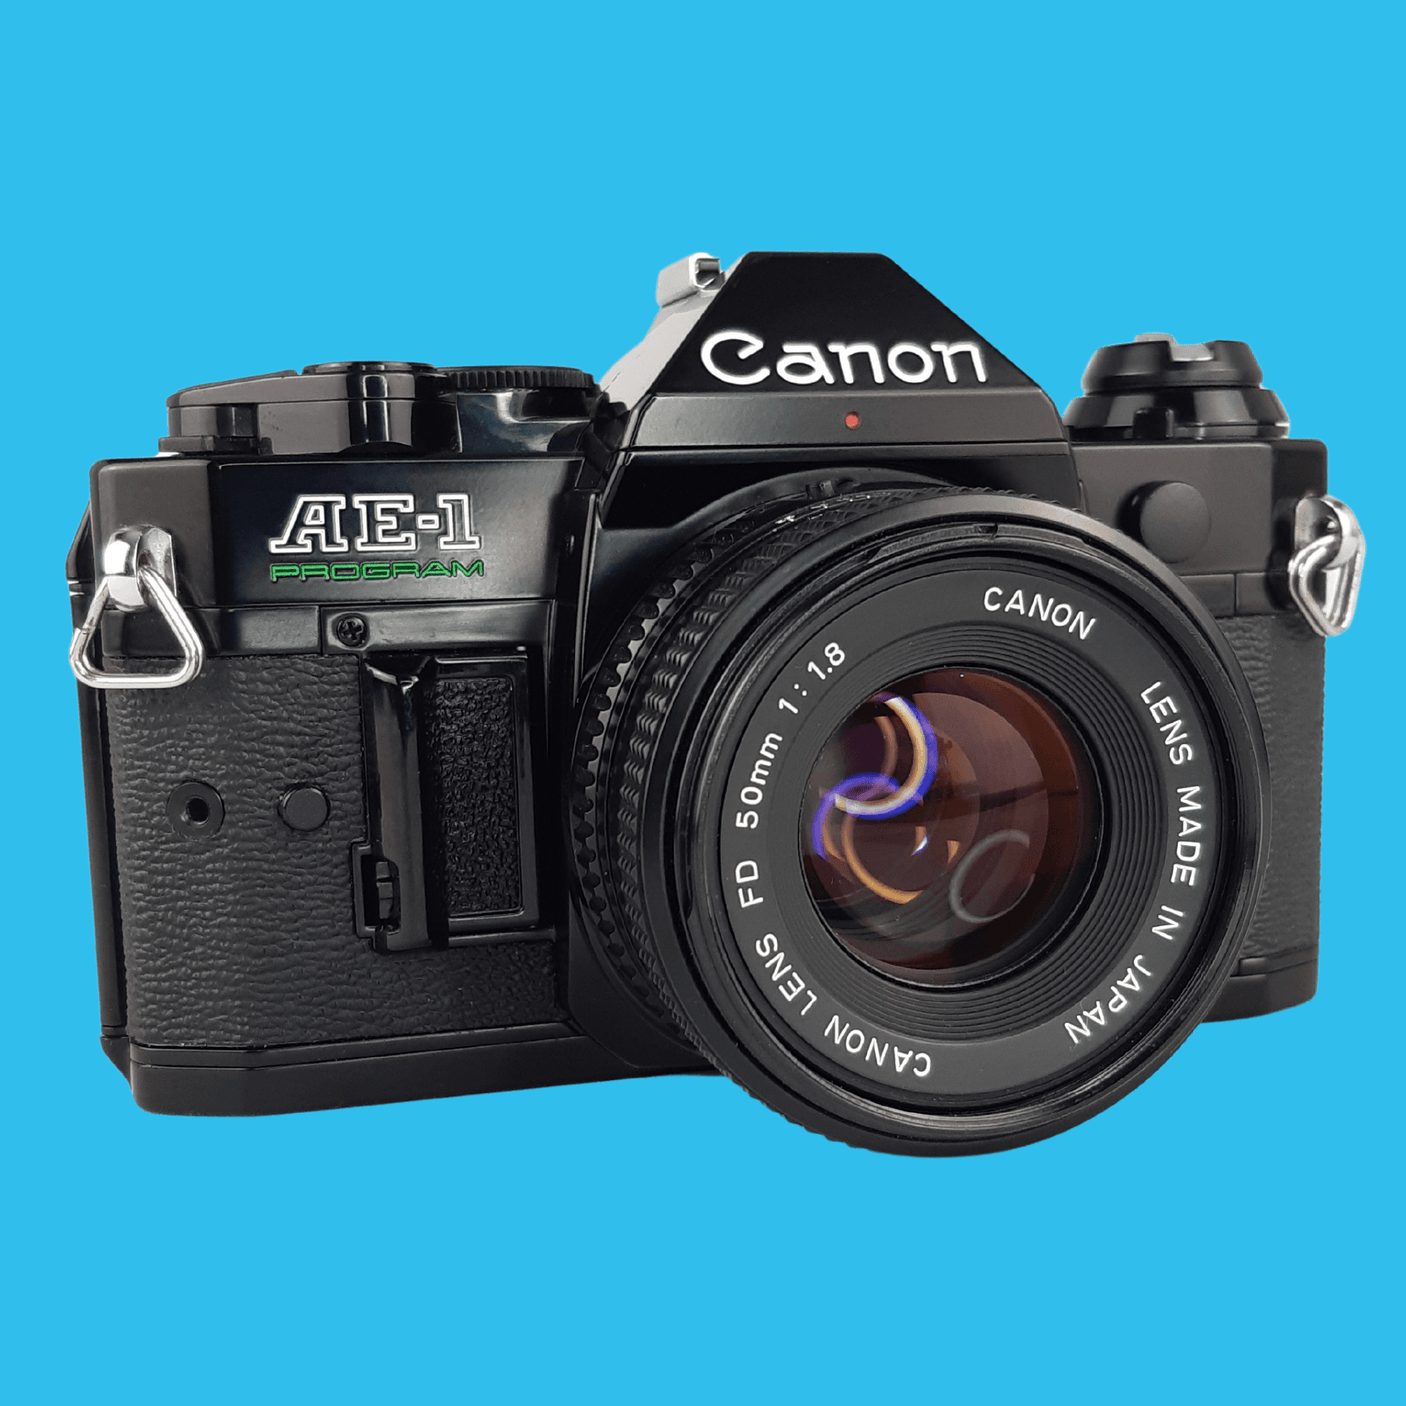 Canon AE-1 PROGRAM キャノン ブラック - フィルムカメラ